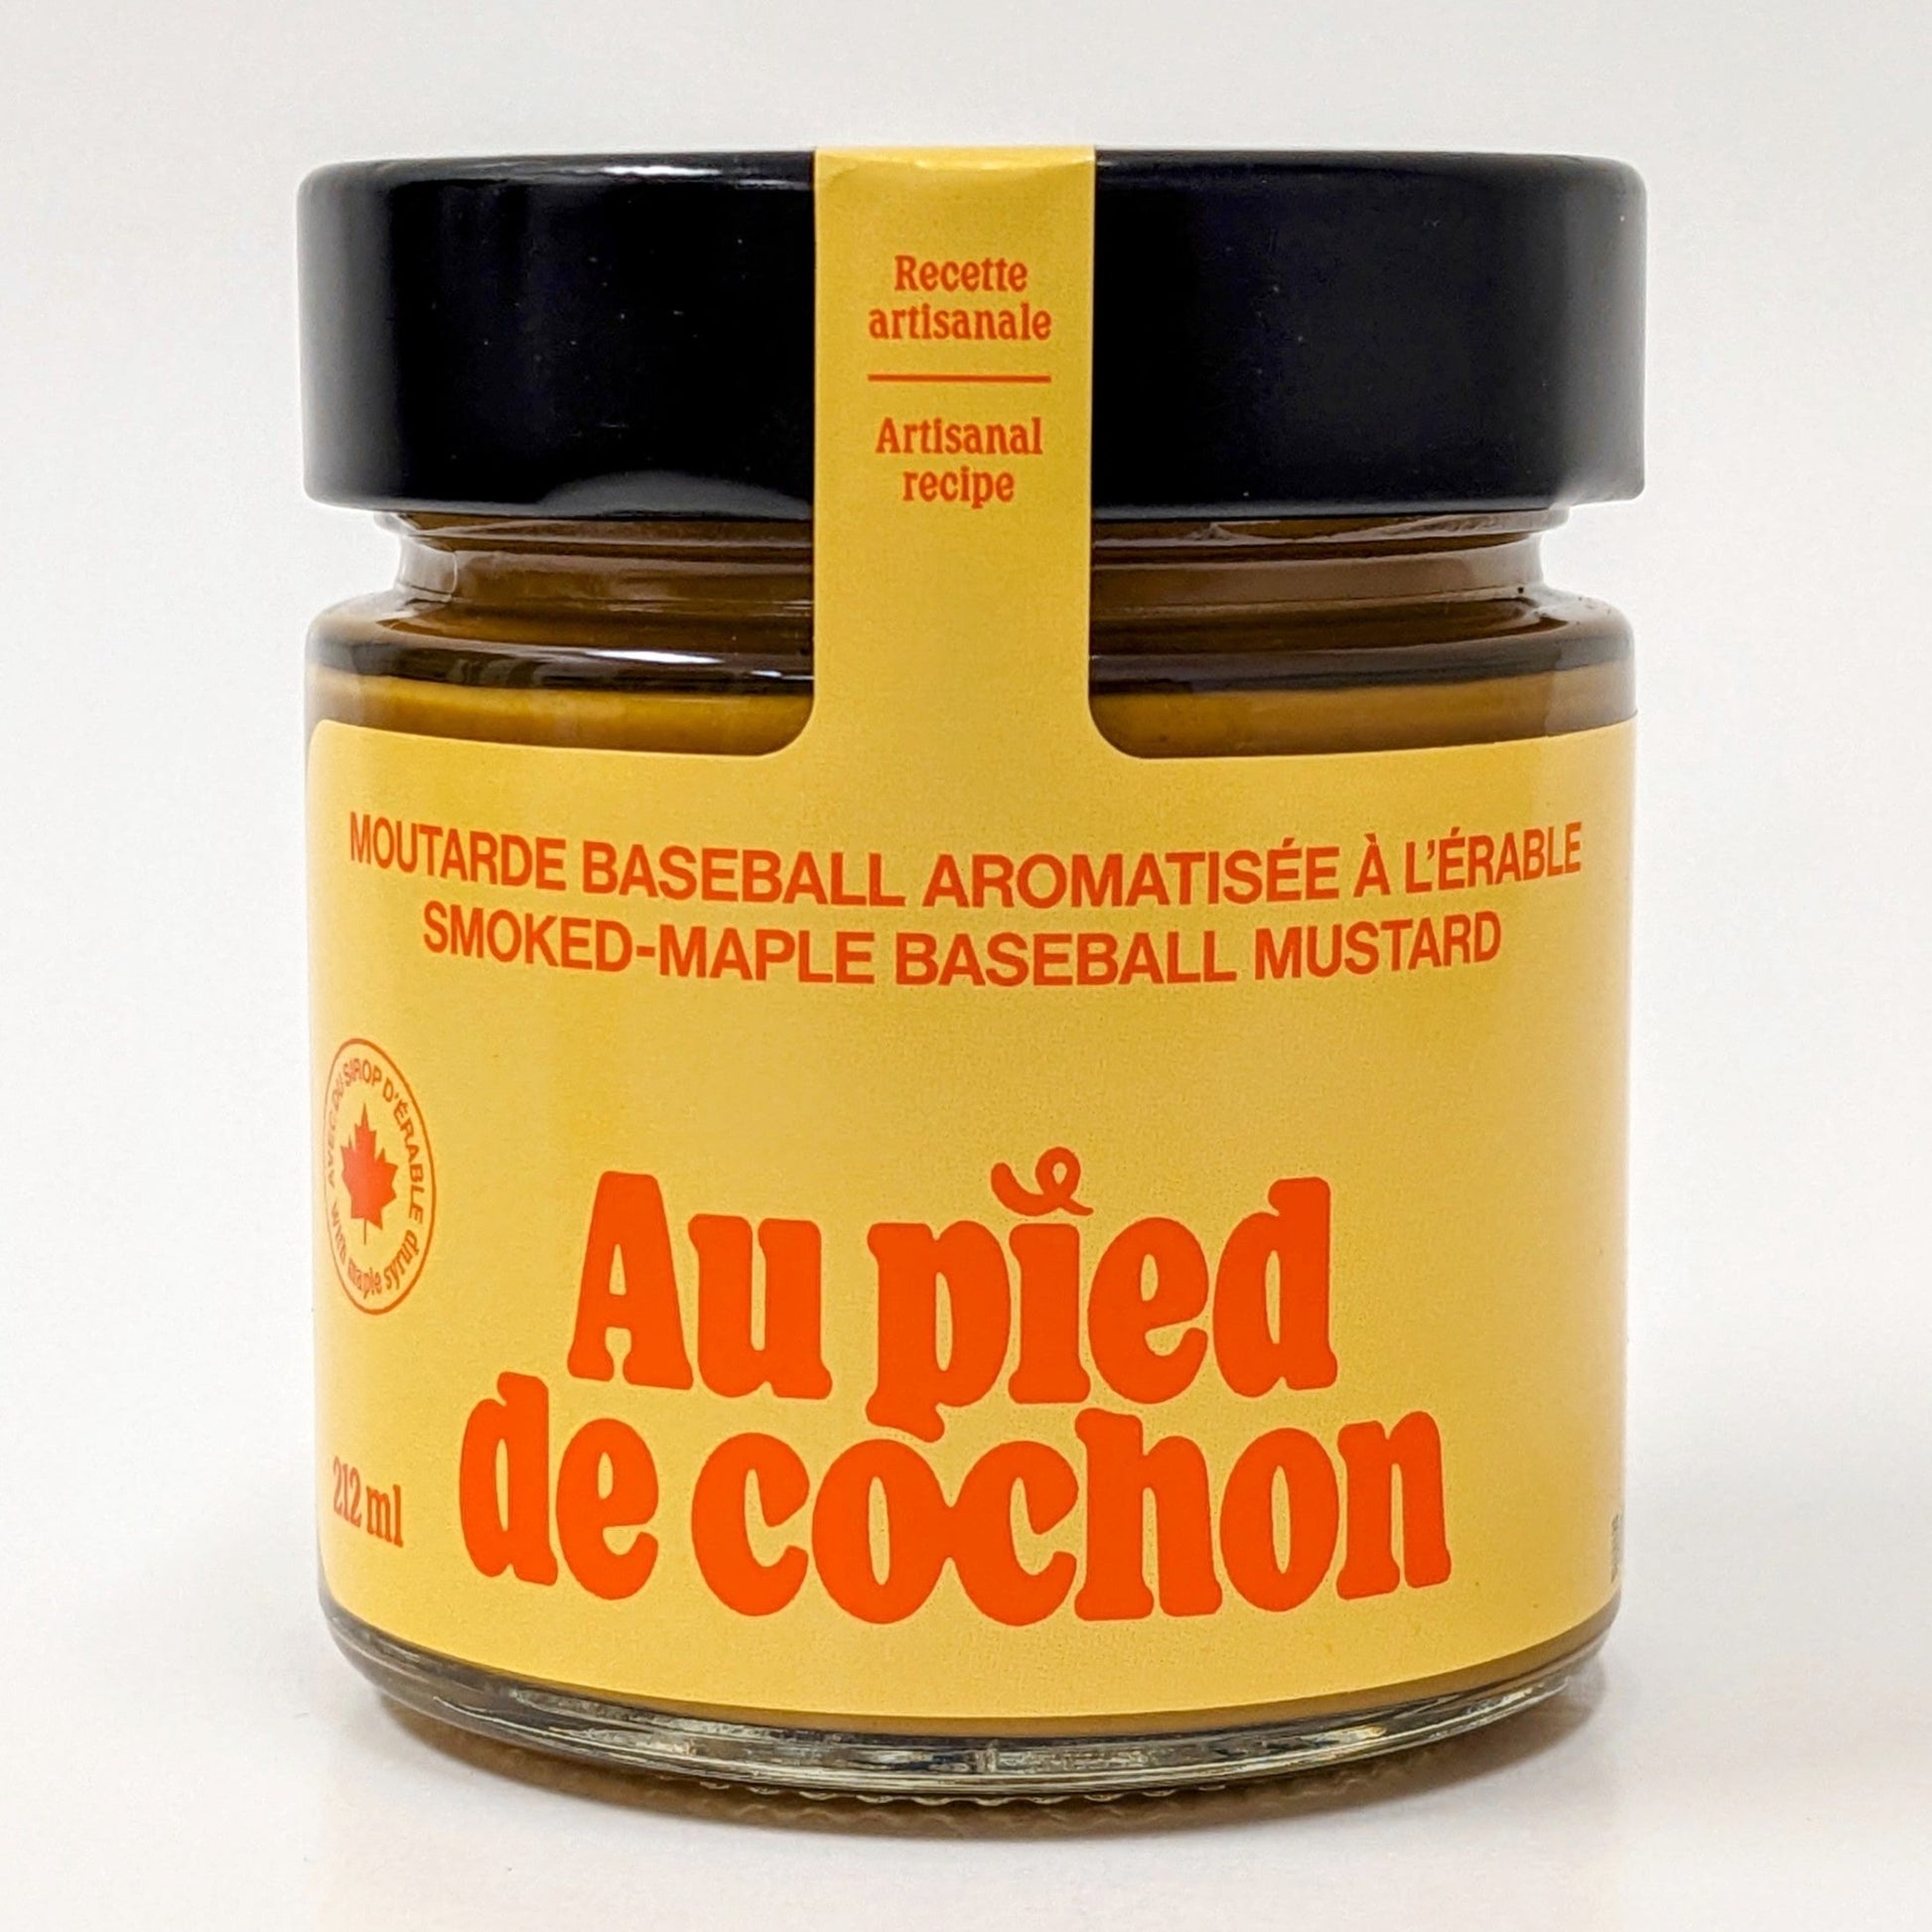 Moutarde Baseball aromatisée à l'érable